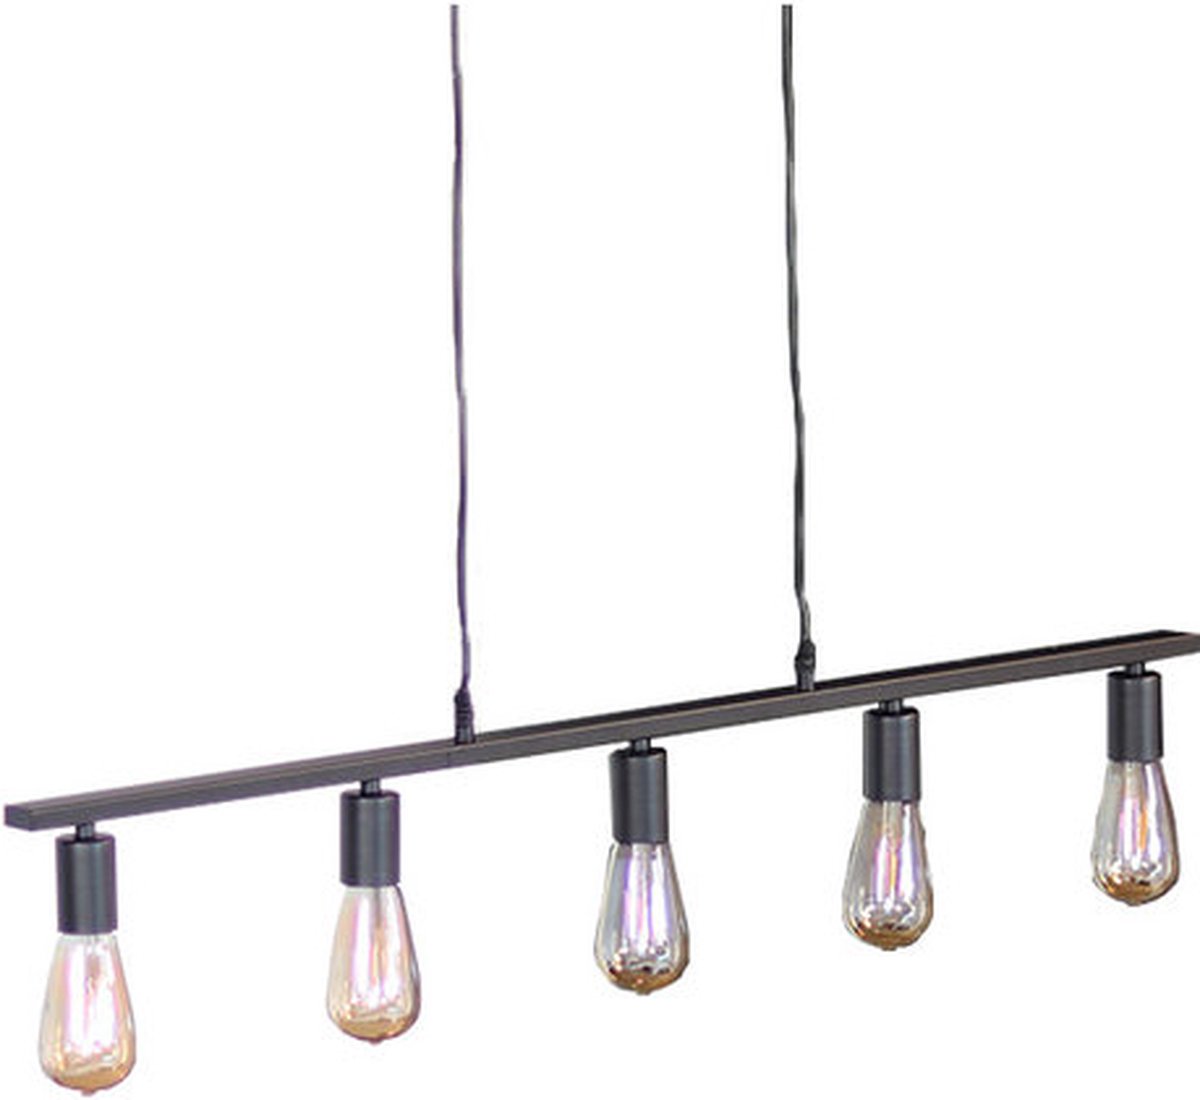 Hanglamp industrieel Straight 5-lichts metaal - Hanglamp zwart - Hanglampen eetkamer